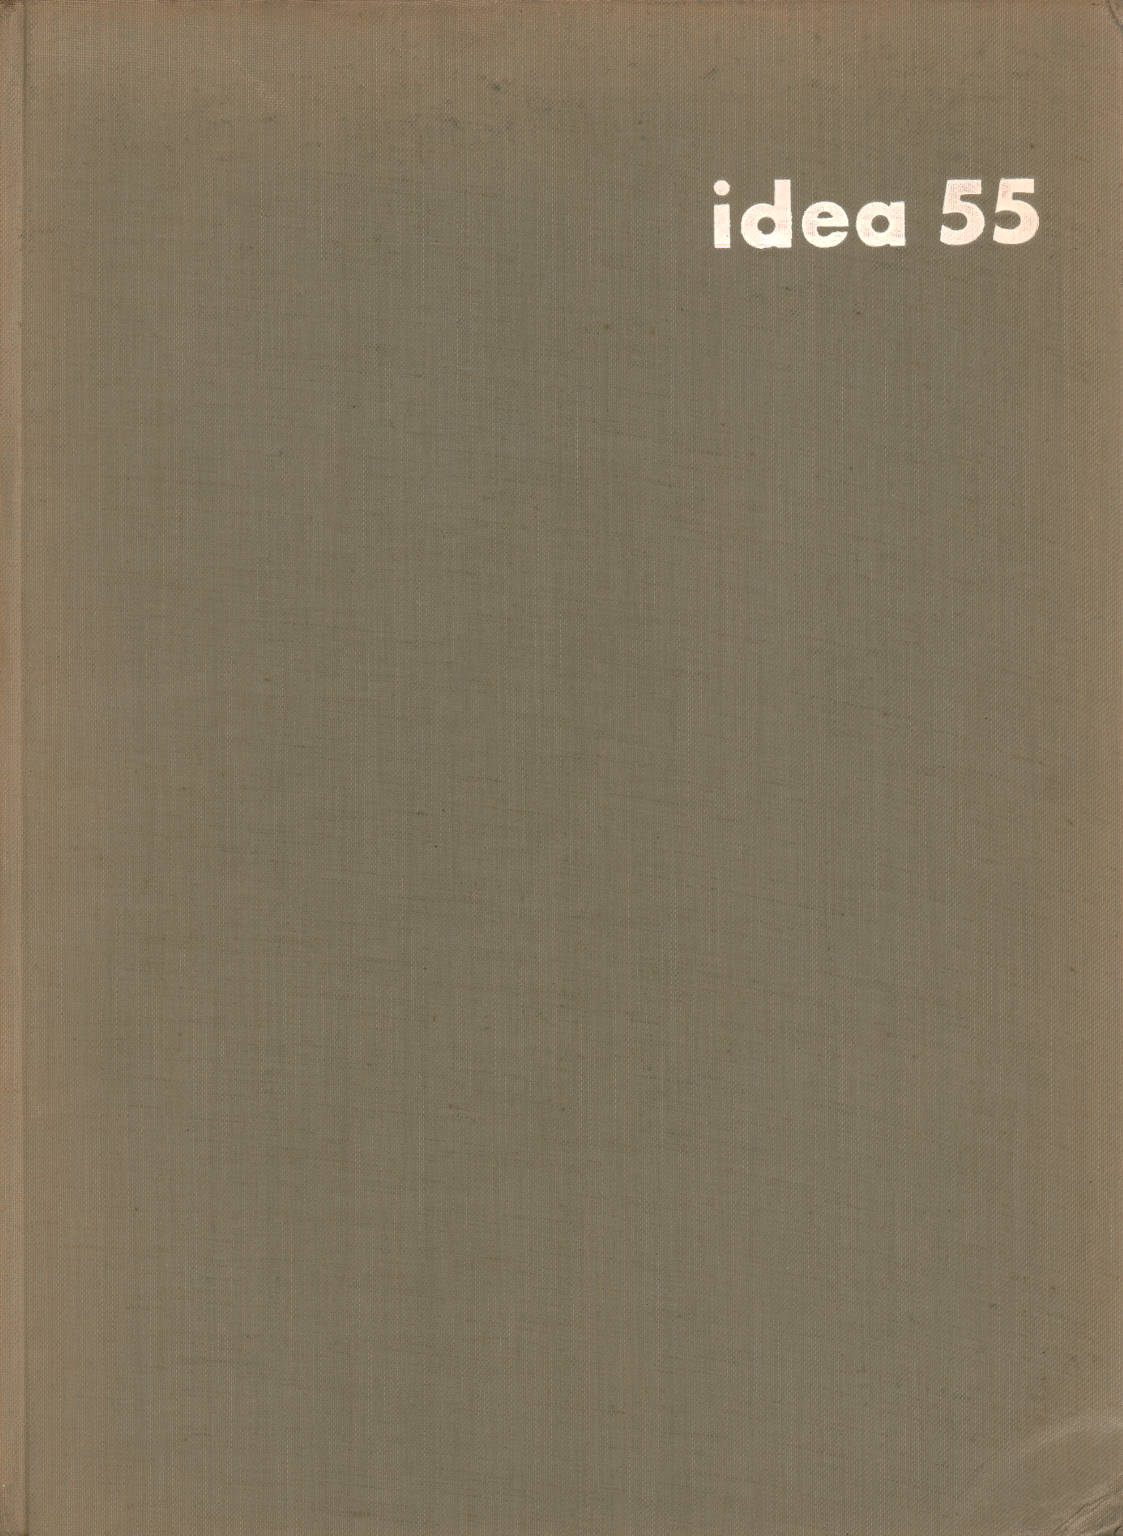 Idea 55, Gerd Hatje